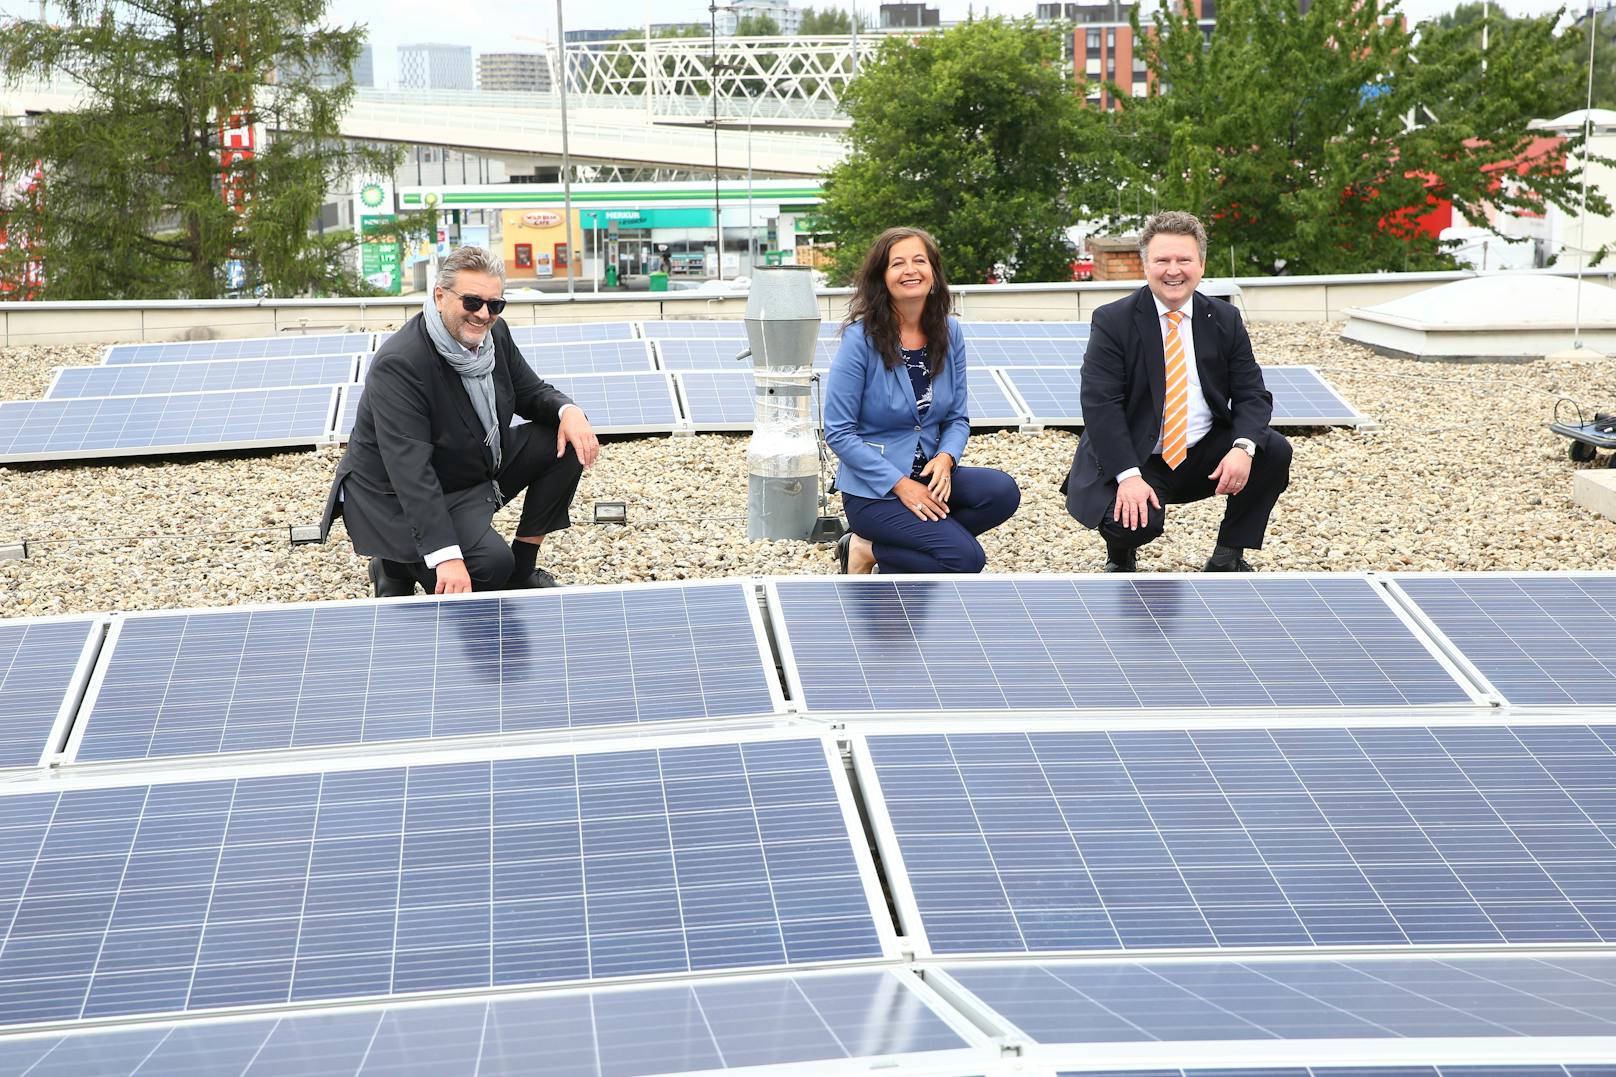 Gesundheitsstadtrat Peter Hacker, Umweltstadträtin Ulli Sima und Bürgermeister Michael Ludwig (v.l.n.r.) präsentierten die neue Photovoltaikanlage auf dem Dach der Rettungsstation Arsenal in Wien-Landstraße.